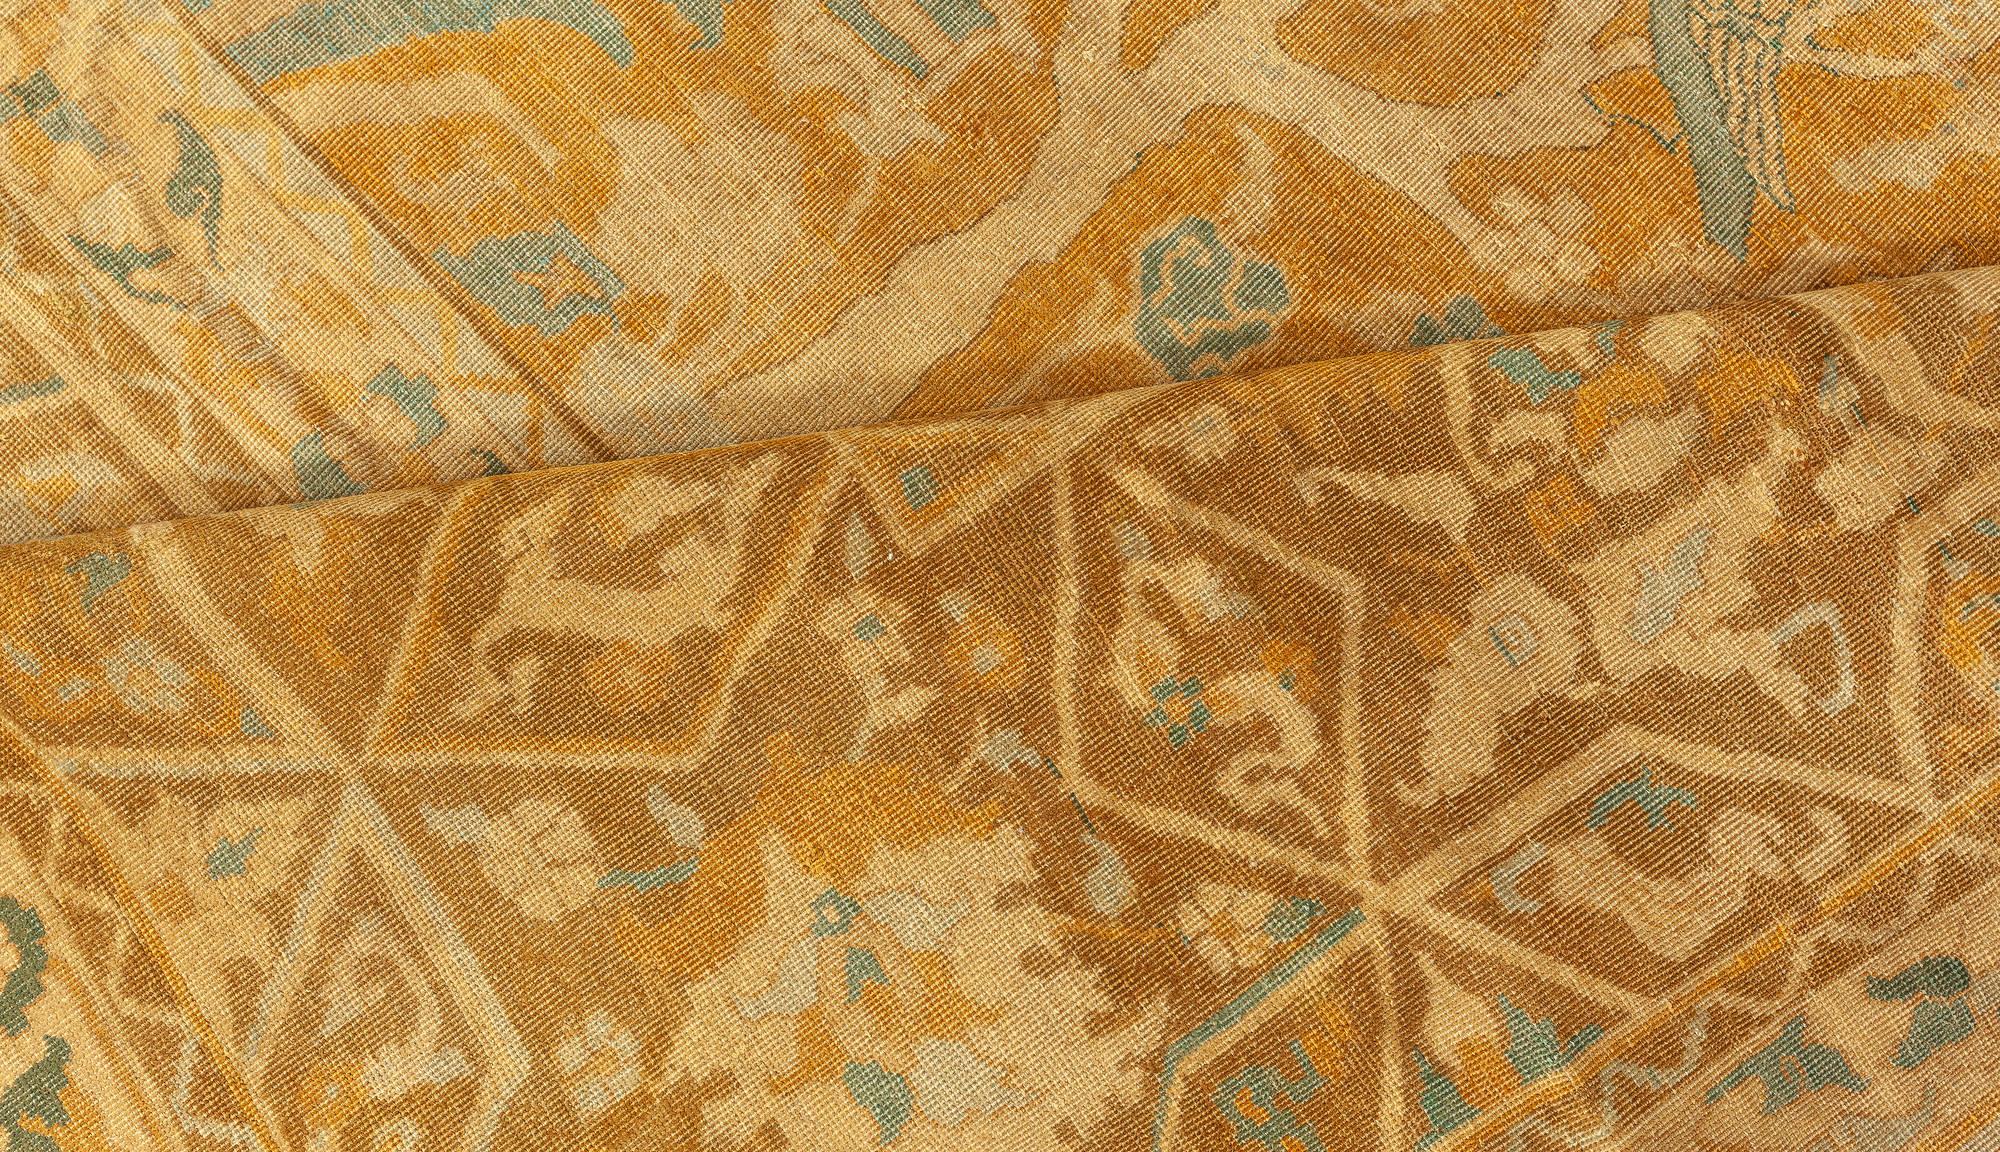 Antique Indian rug (Size Adjusted)
Size: 12'10